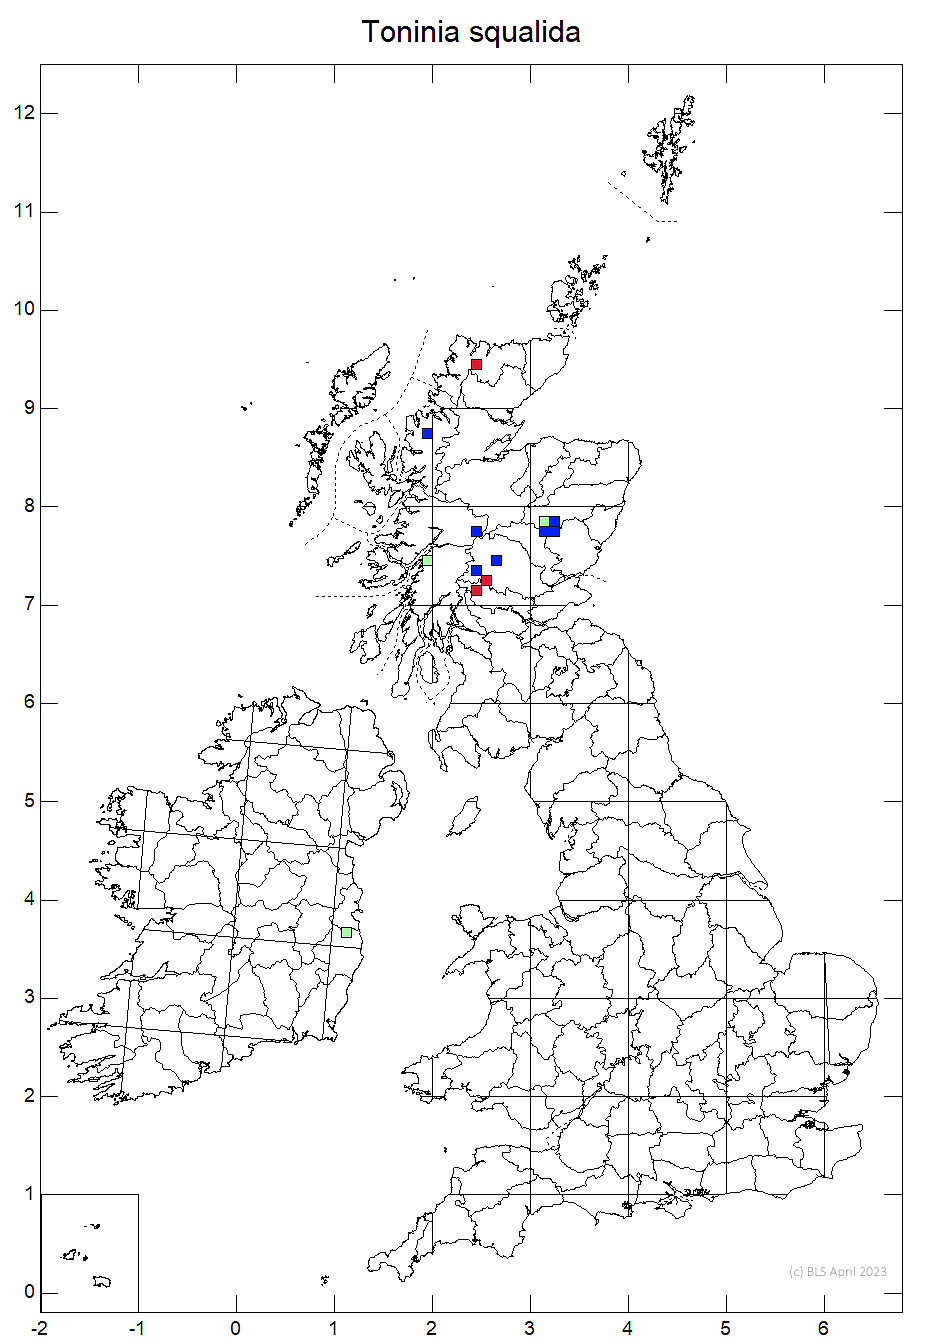 Toninia squalida 10km sq distribution map